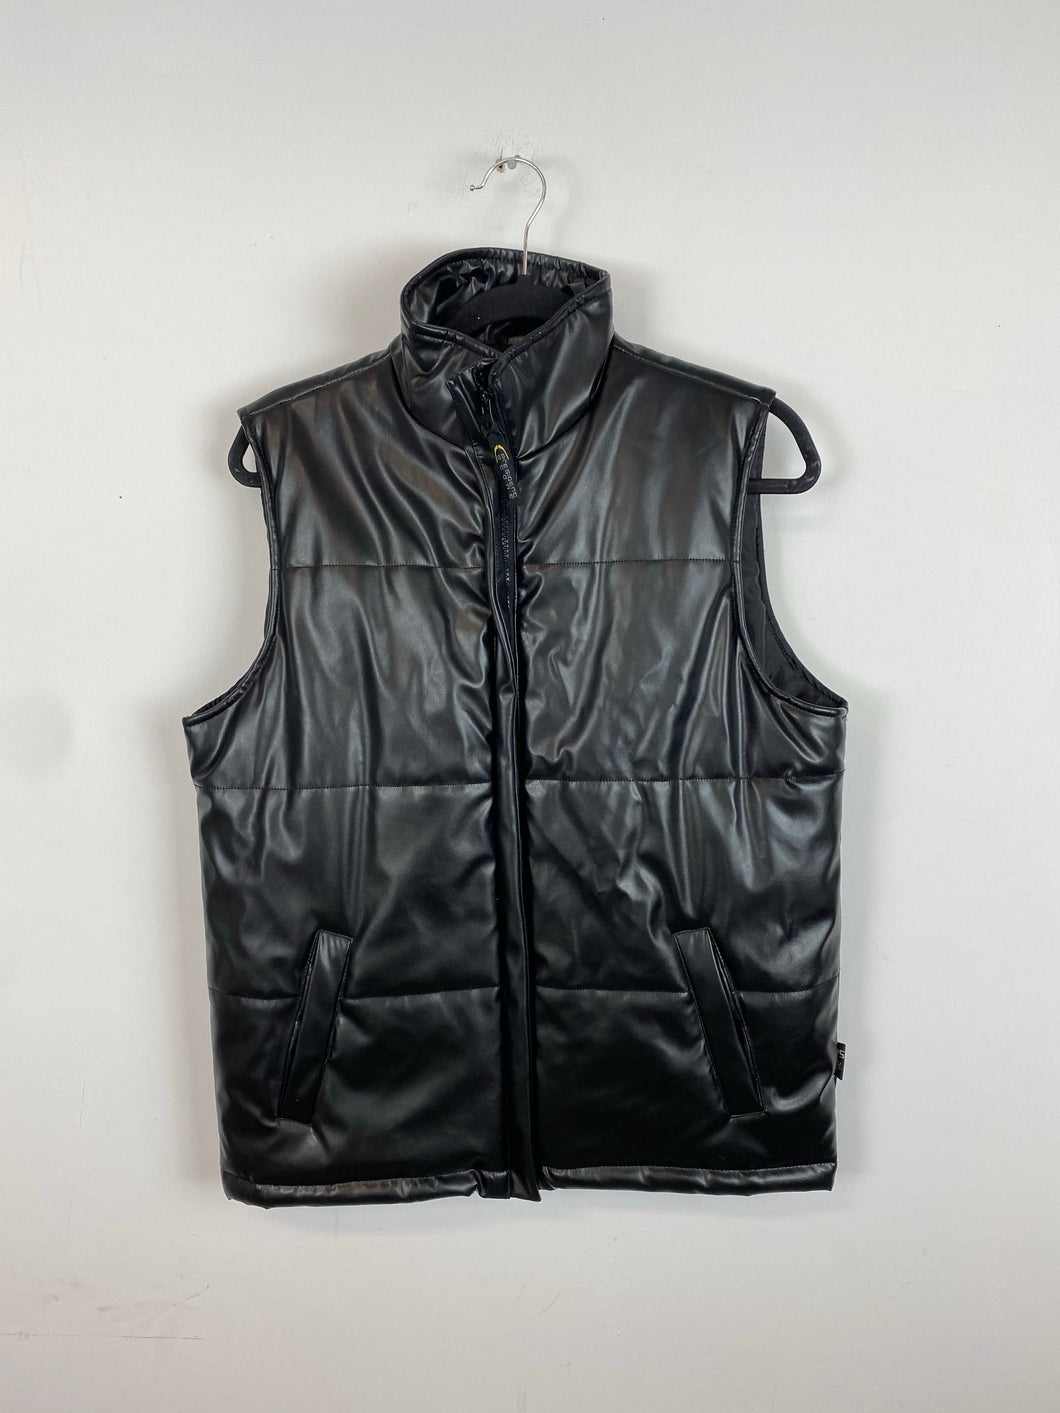 90s leather vest - women’s M